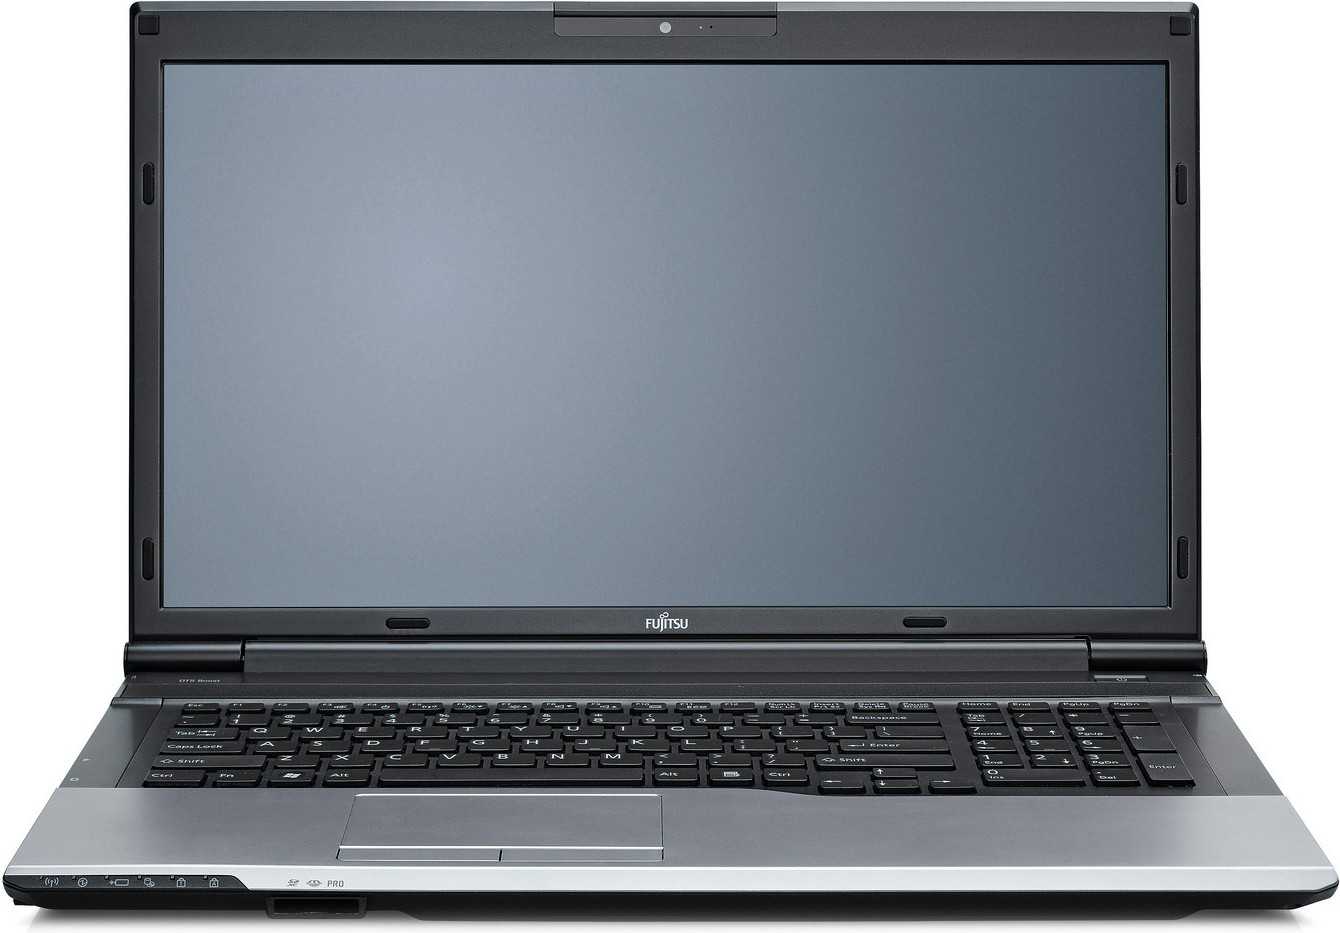 Ноутбук Fujitsu Lifebook N532 (N5320M53A5RU) - подробные характеристики обзоры видео фото Цены в интернет-магазинах где можно купить ноутбук Fujitsu Lifebook N532 (N5320M53A5RU)